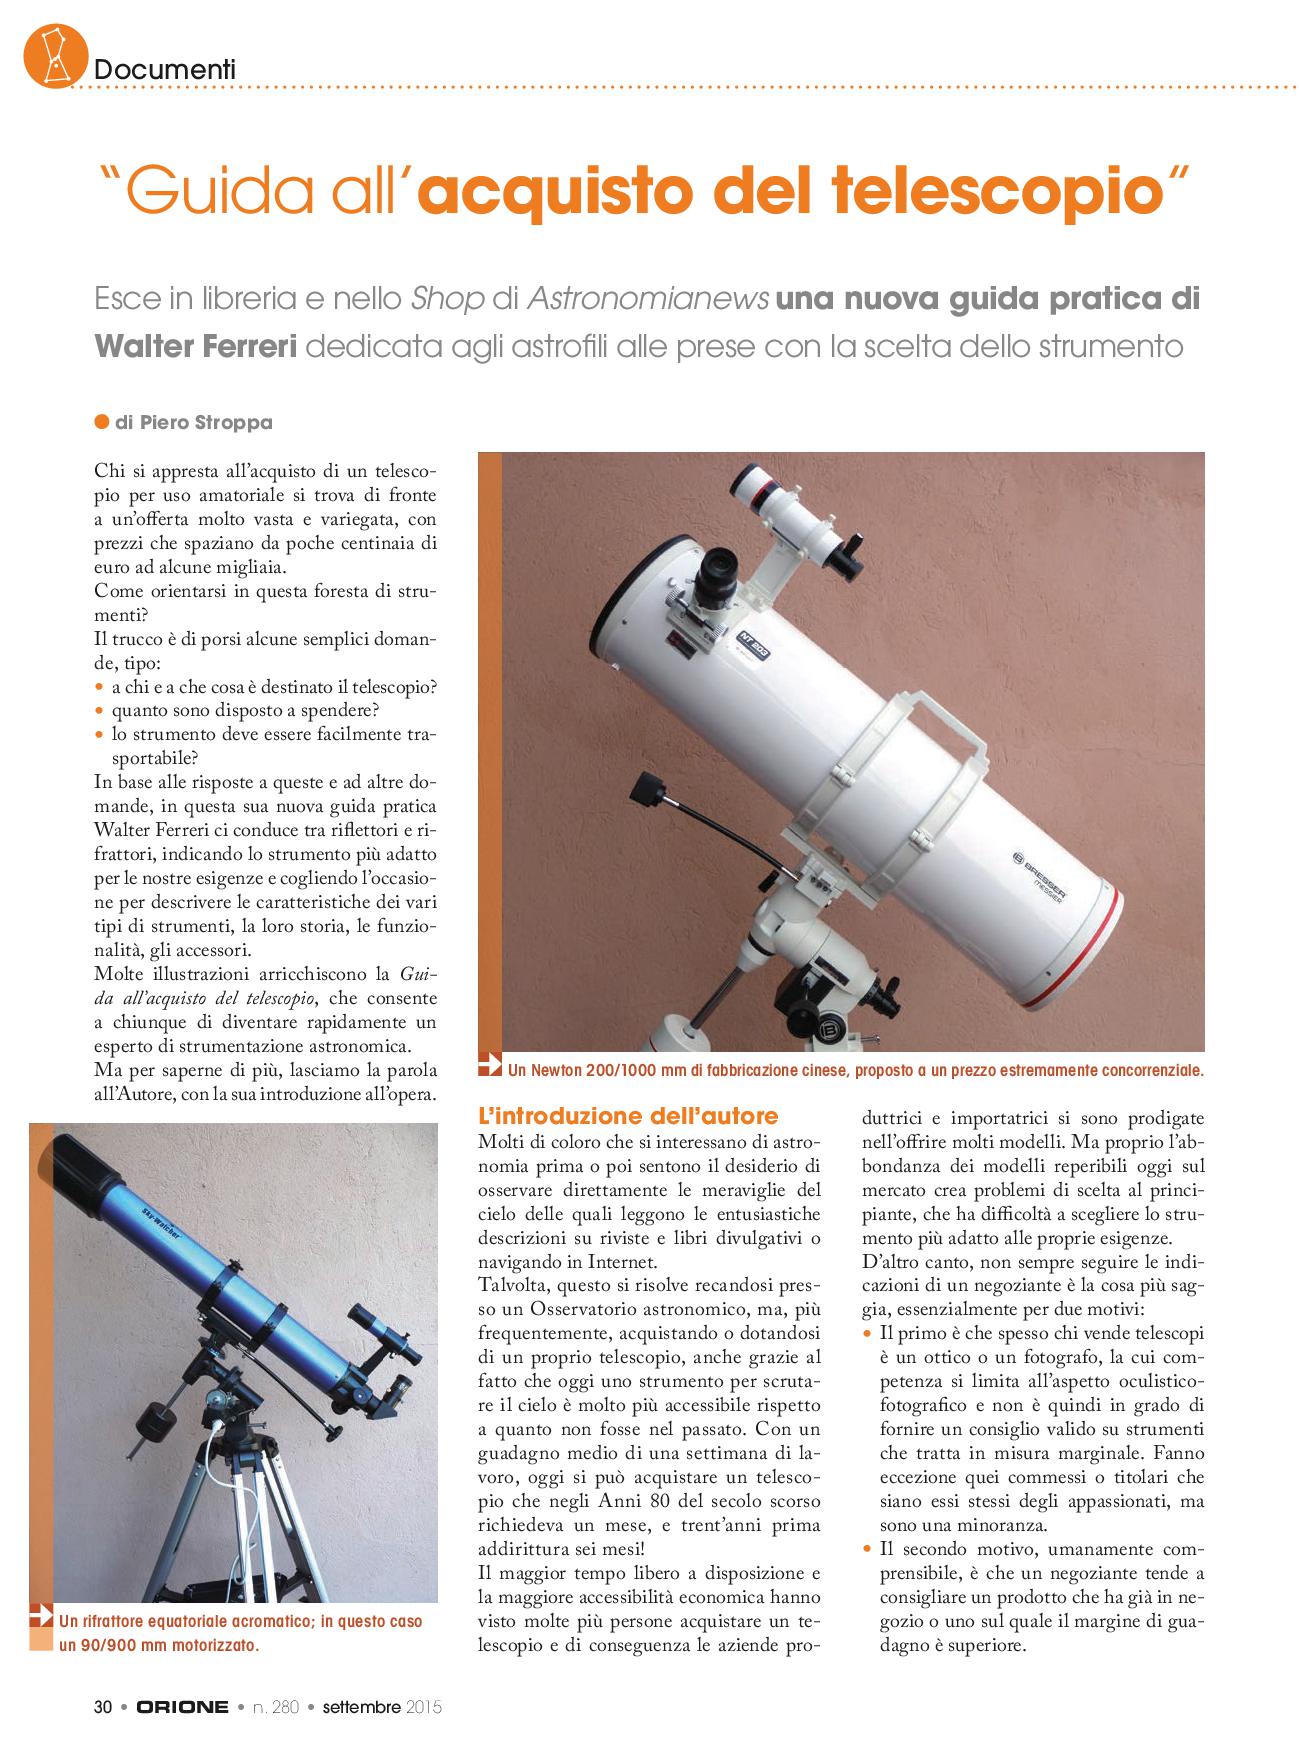 Documenti: “Guida pratica all’acquisto del telescopio”